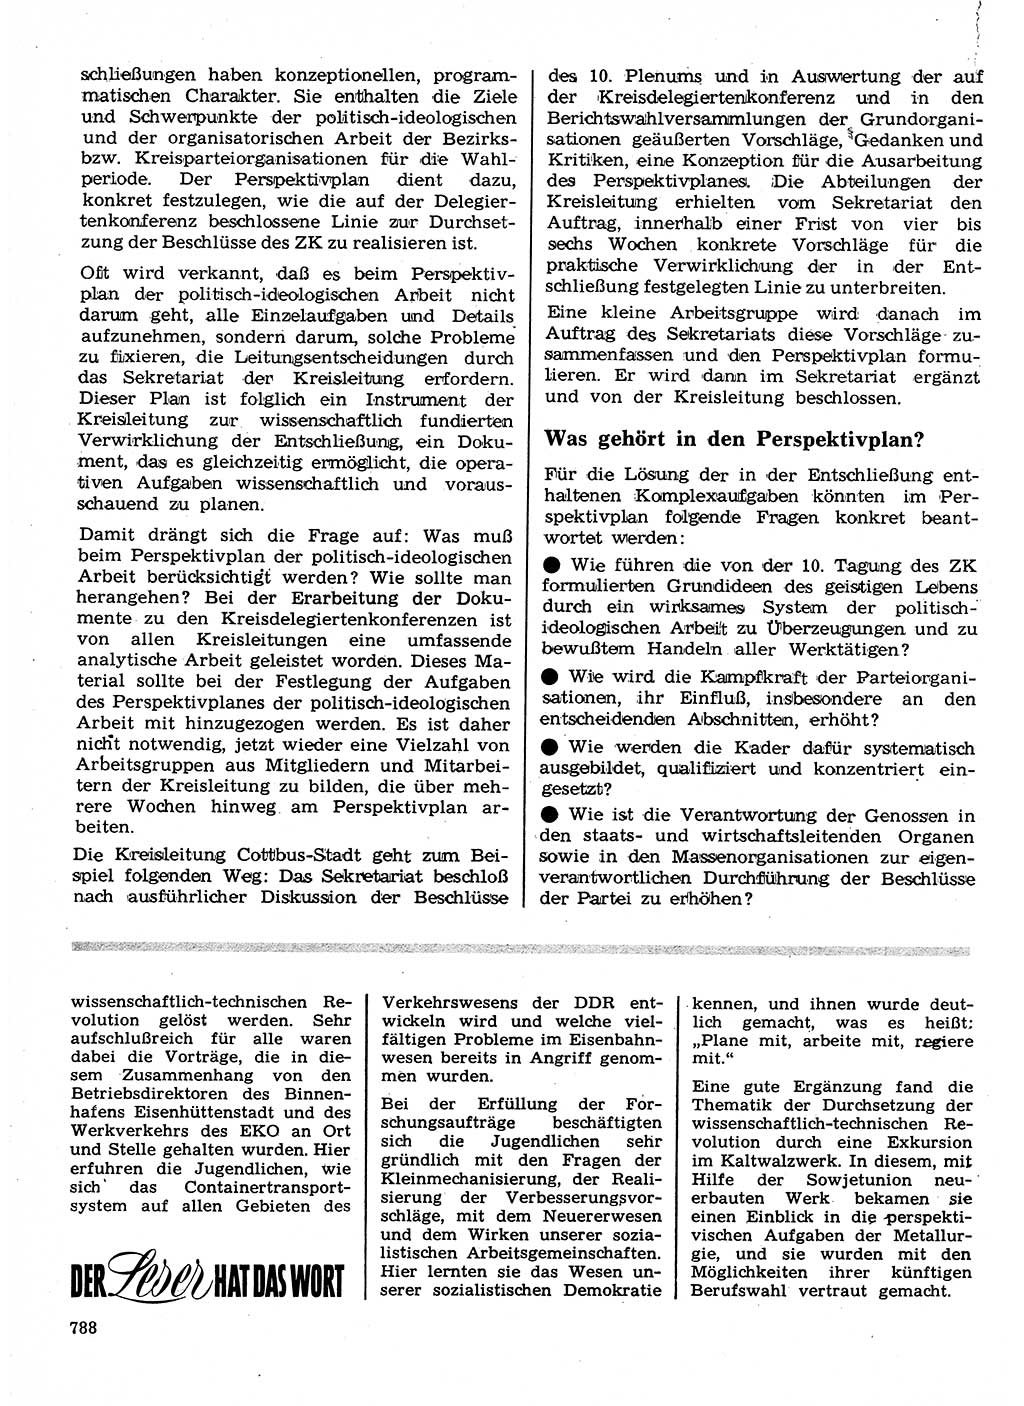 Neuer Weg (NW), Organ des Zentralkomitees (ZK) der SED (Sozialistische Einheitspartei Deutschlands) für Fragen des Parteilebens, 24. Jahrgang [Deutsche Demokratische Republik (DDR)] 1969, Seite 788 (NW ZK SED DDR 1969, S. 788)